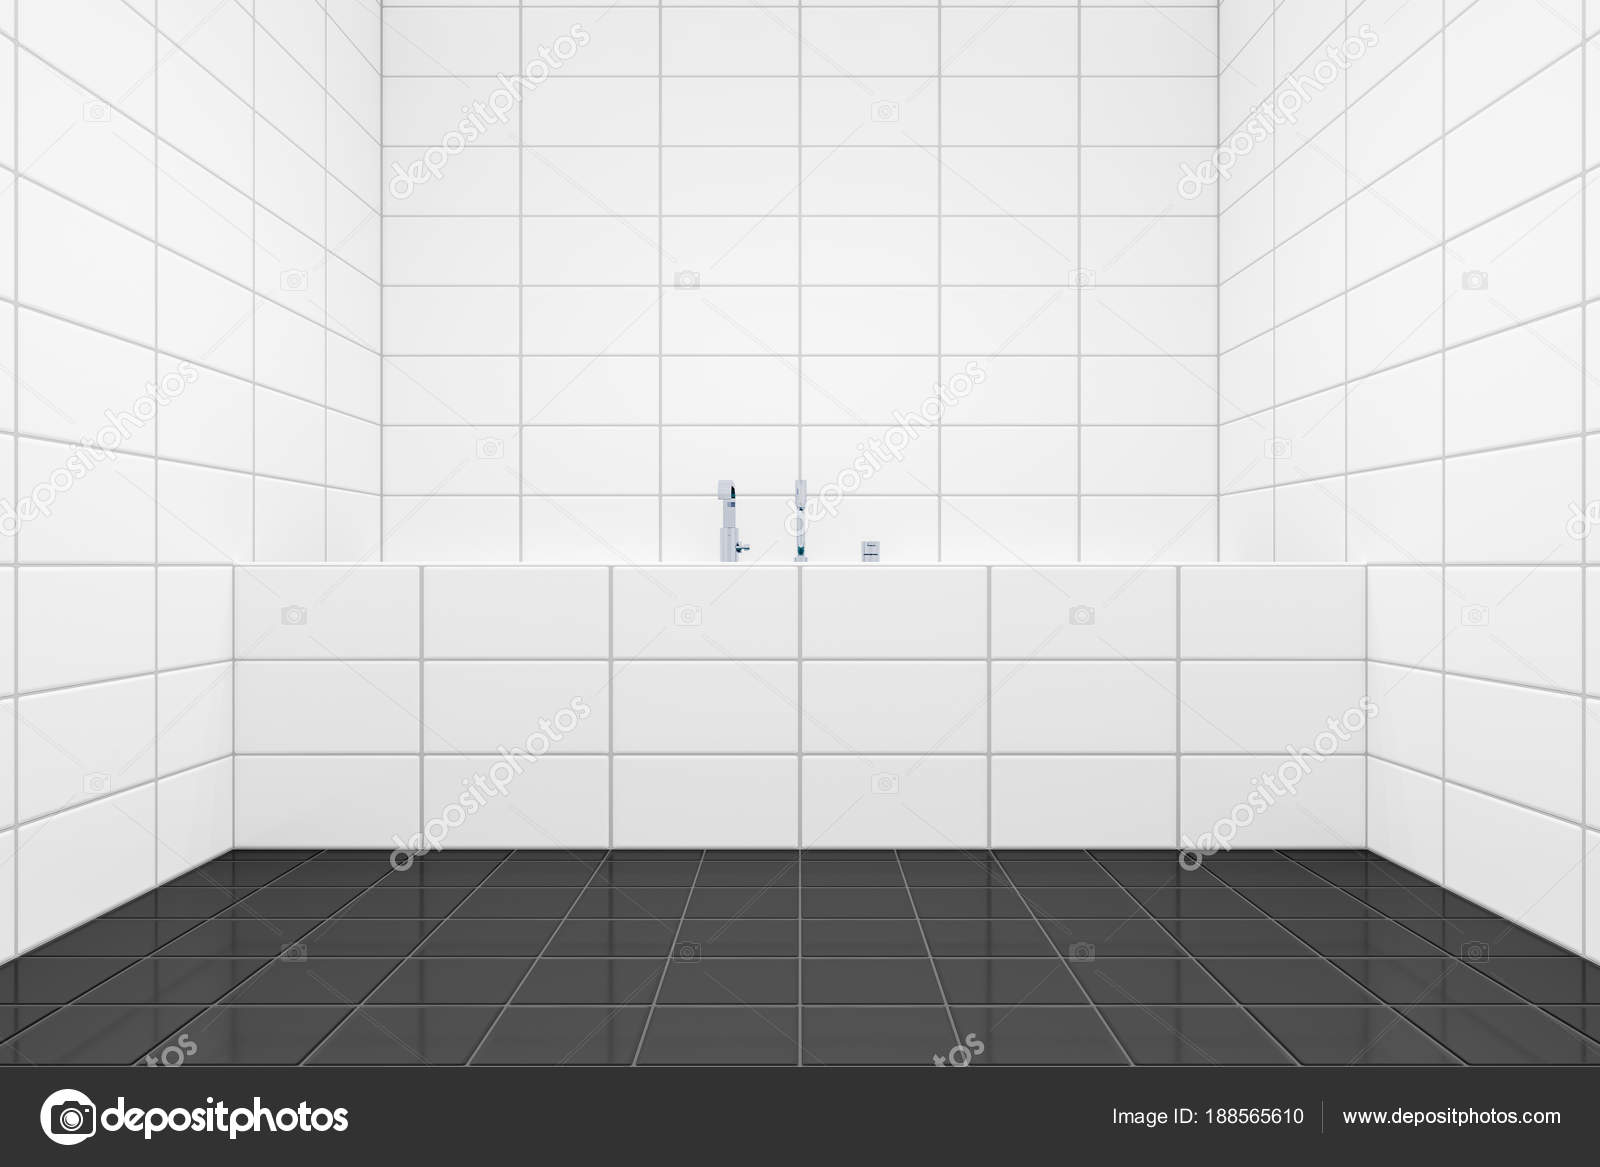 Baño moderno con suelo de baldosas. — Foto de stock © magann #188565610